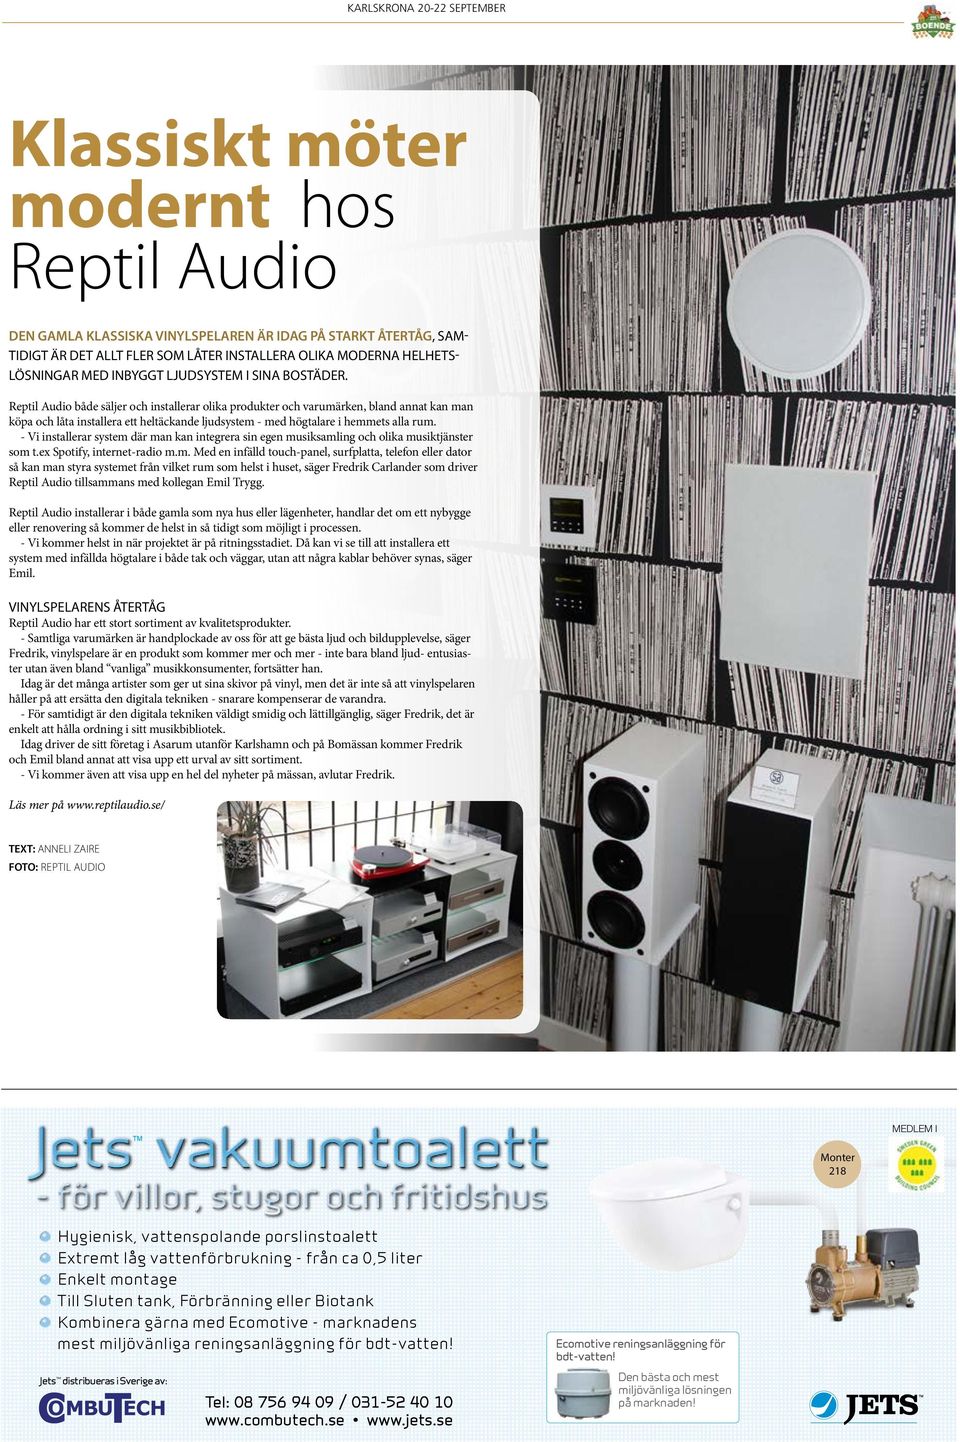 Reptil Audio både säljer och installerar olika produkter och varumärken, bland annat kan man köpa och låta installera ett heltäckande ljudsystem - med högtalare i hemmets alla rum.